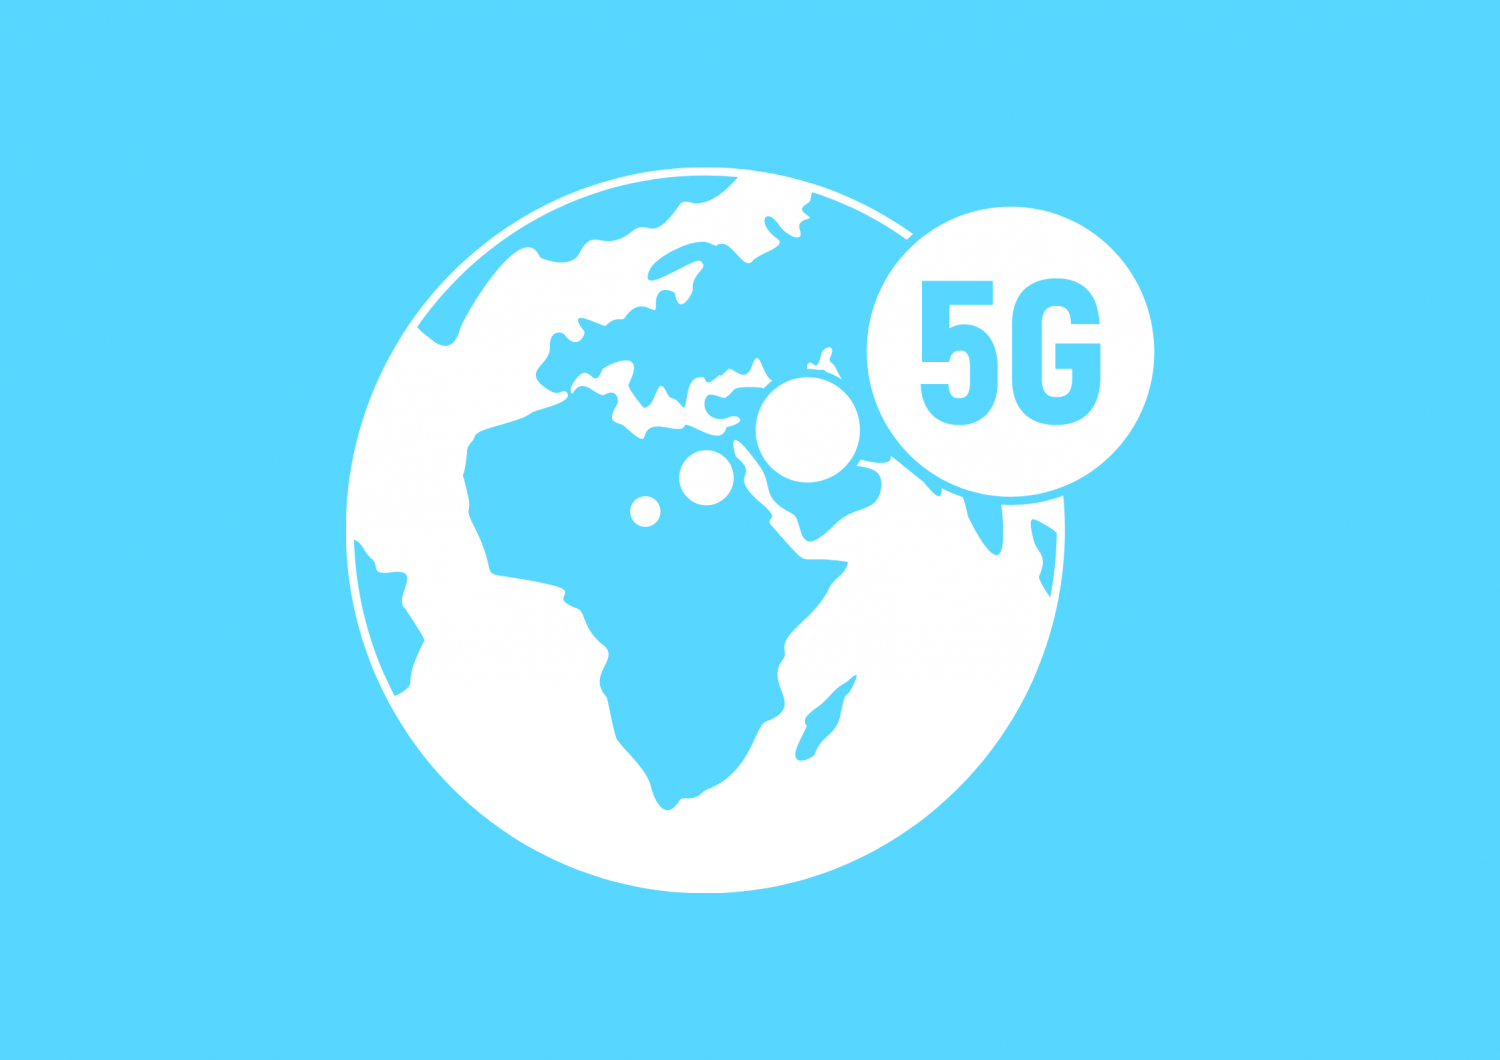 次世代通信サービス「5G」が本格化しています。